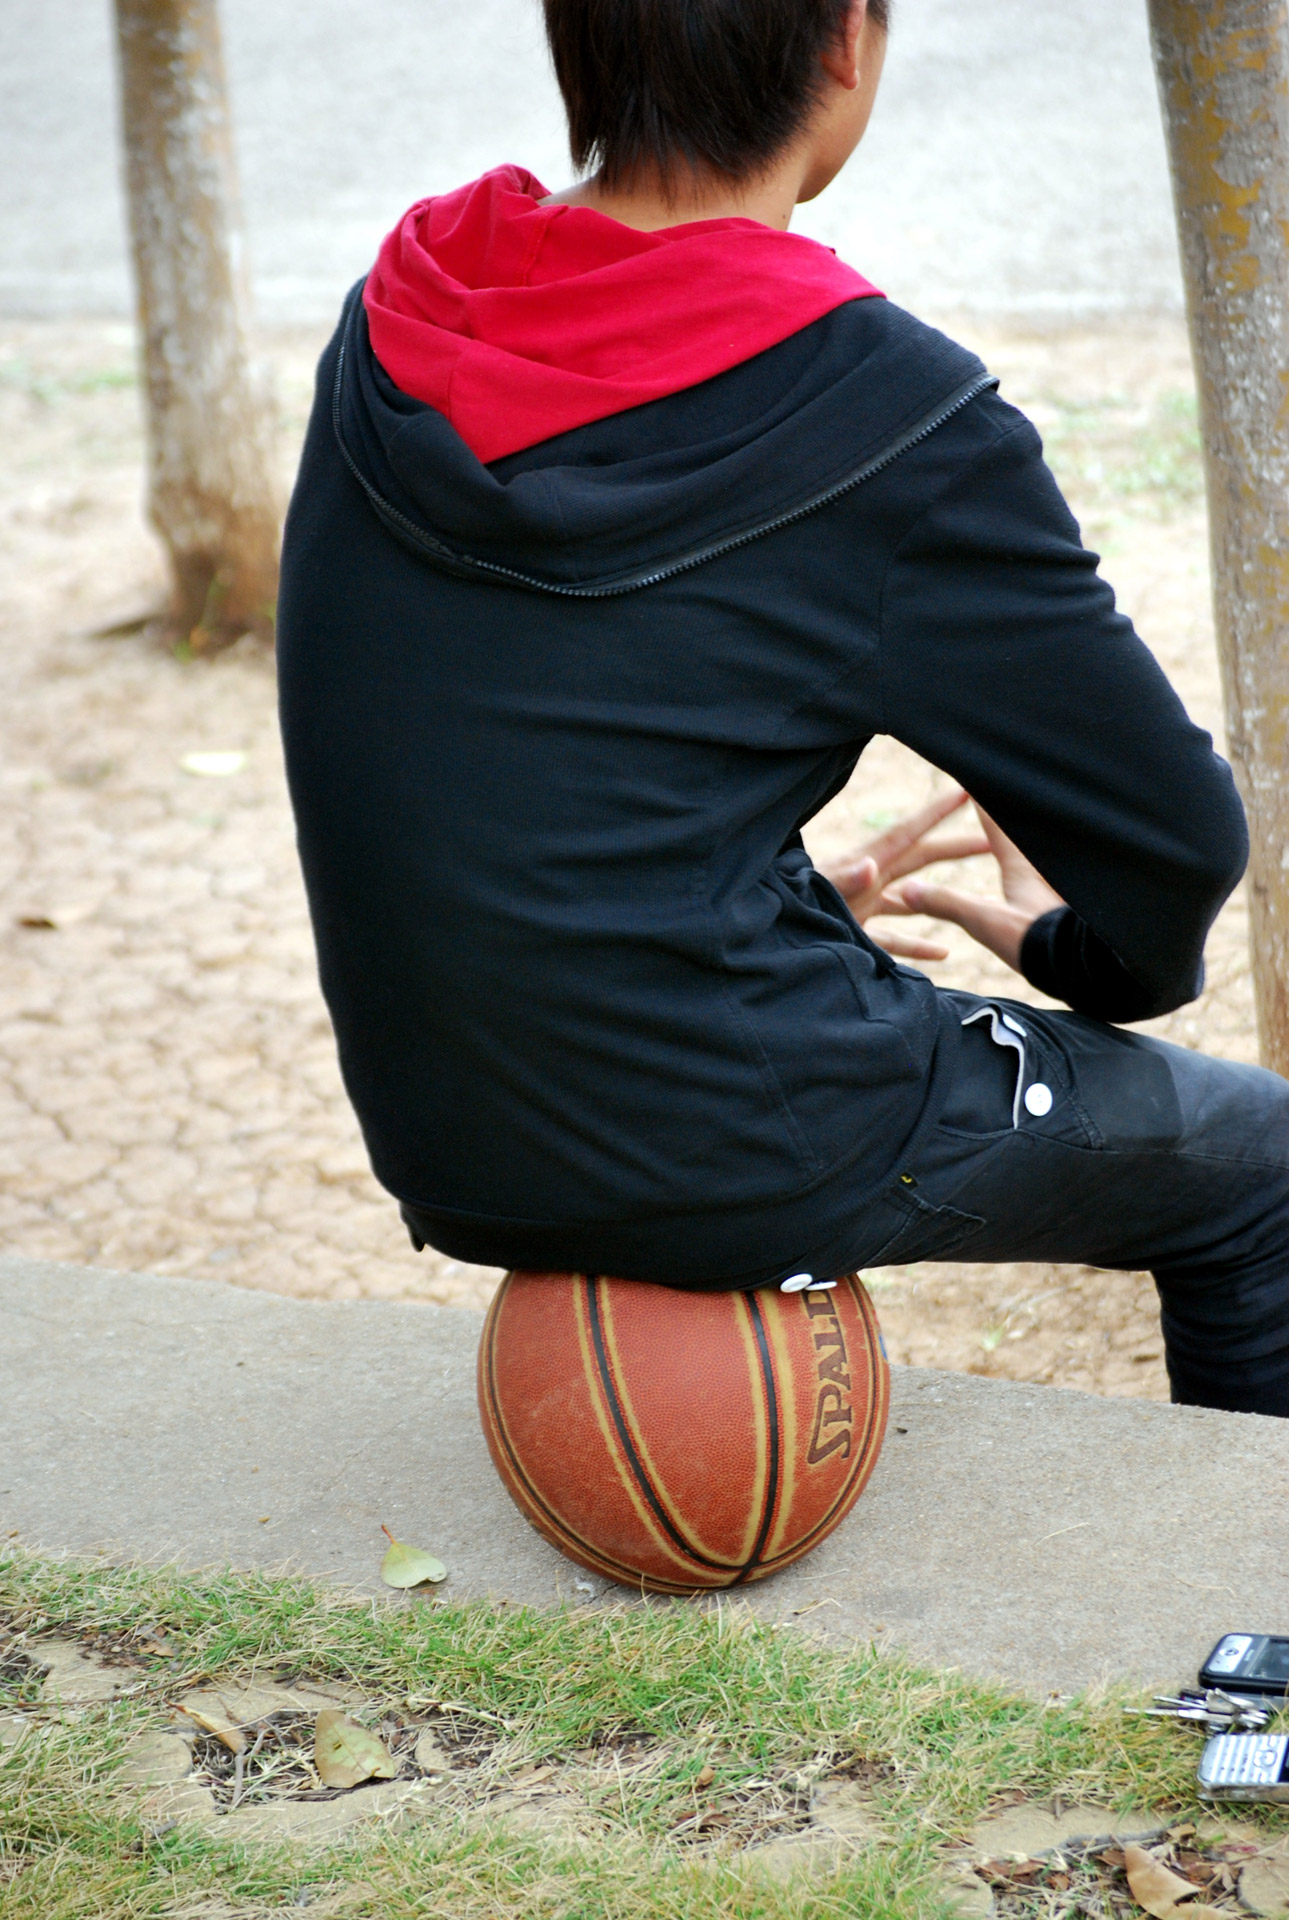 basketball ball boy free photo